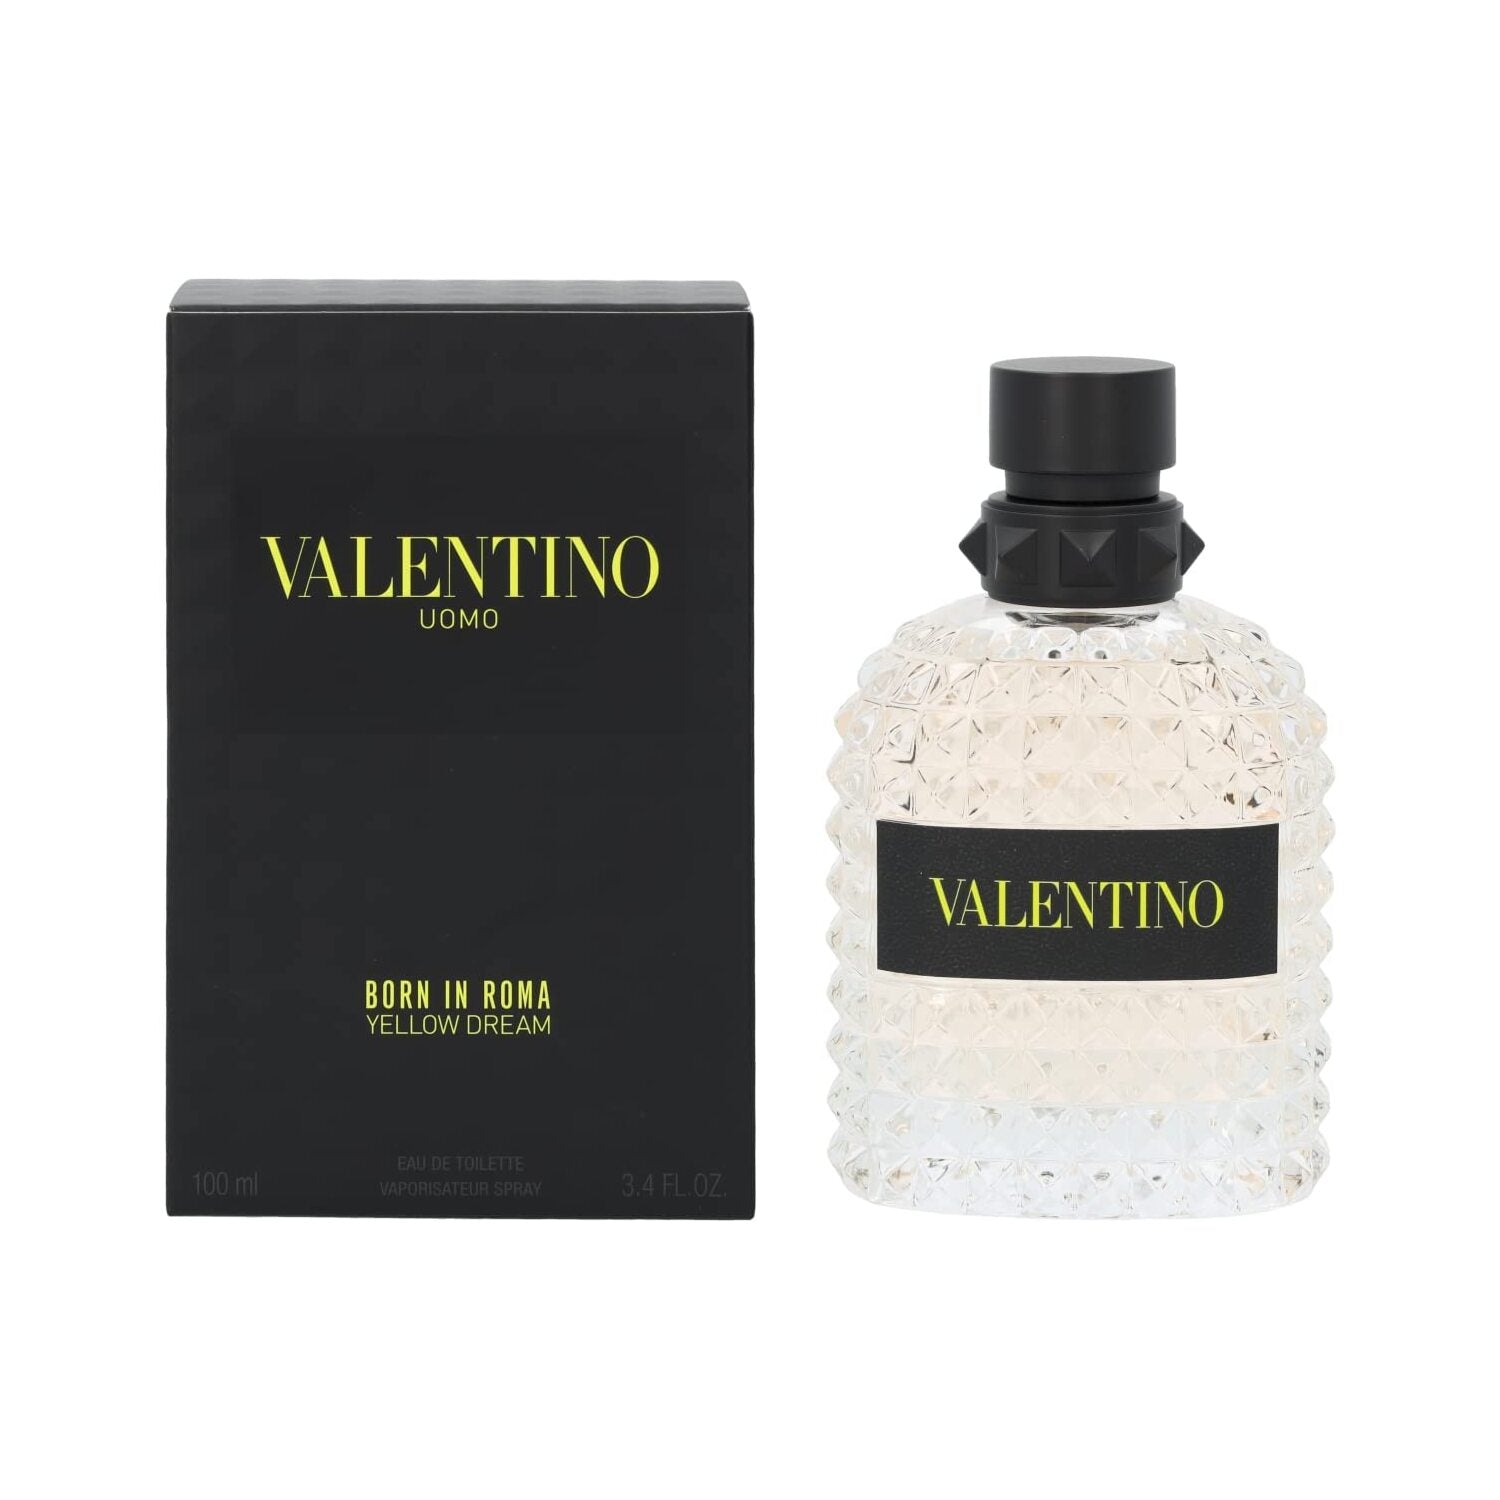 Valentino Uomo Born In Roma Yellow Dream by Valentino 3.4 oz EDT Spray for Men